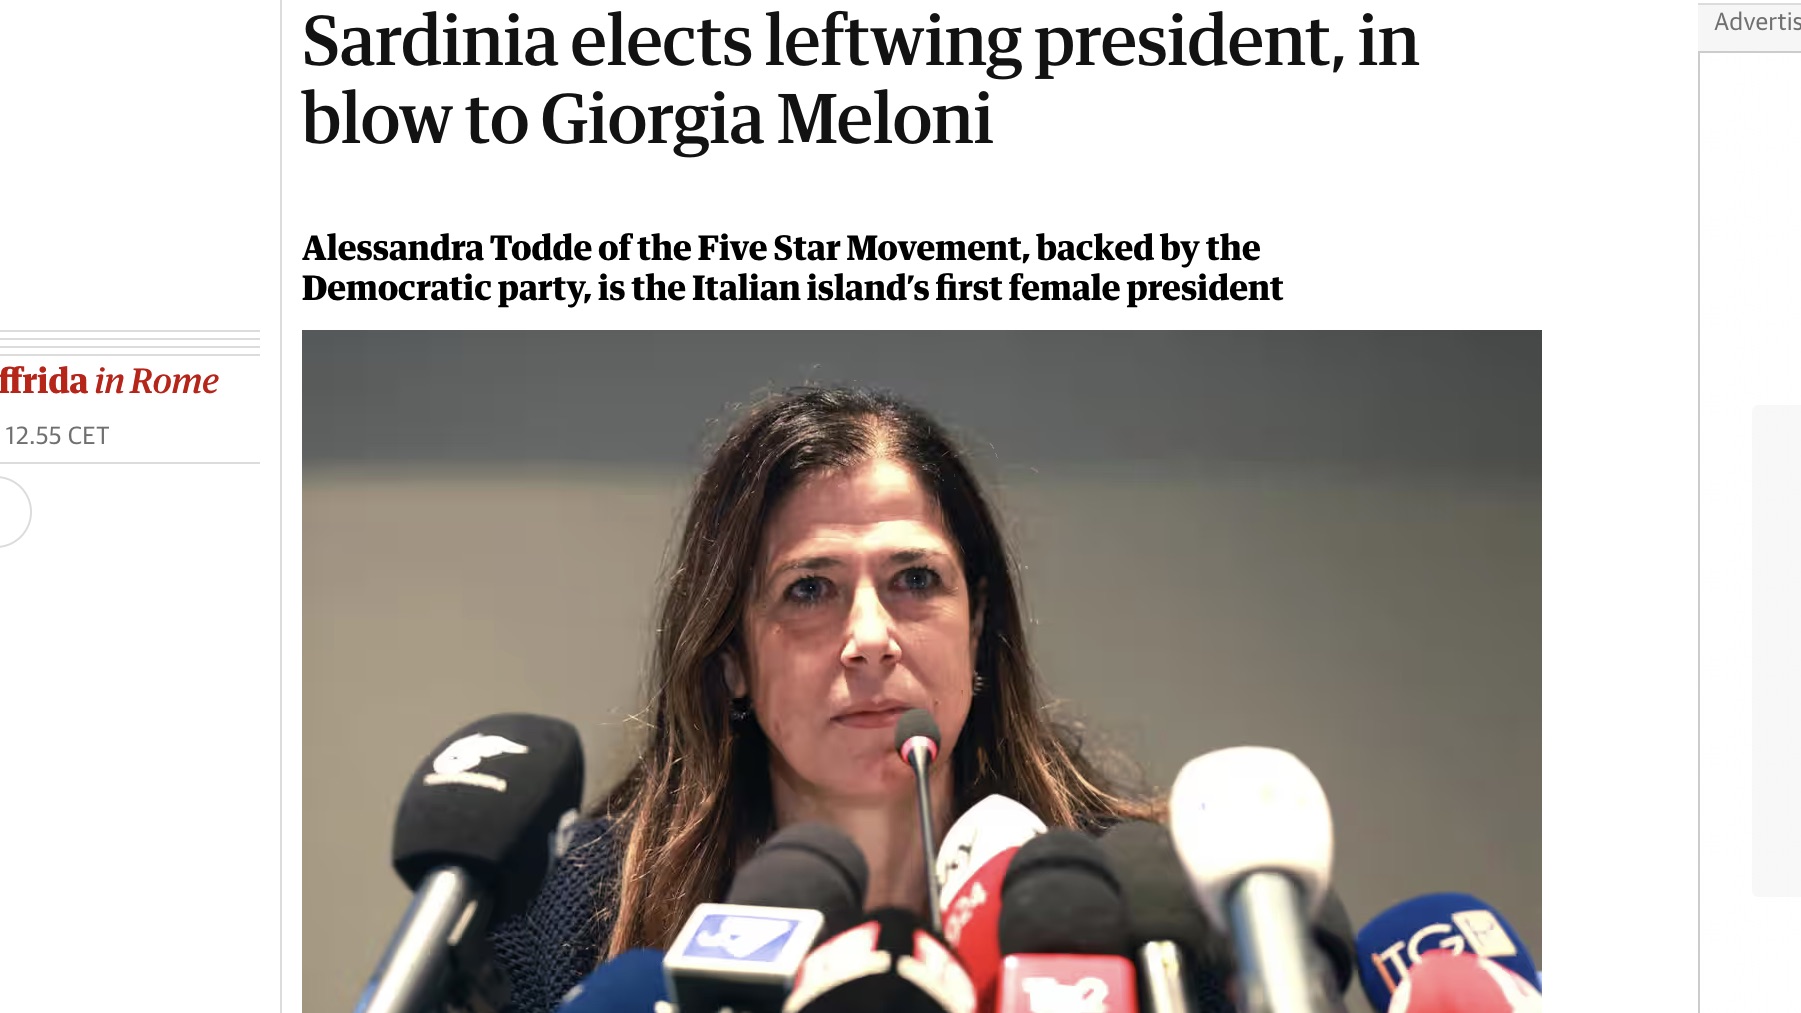 La vittoria di Alessandra Todde sul The Guardian